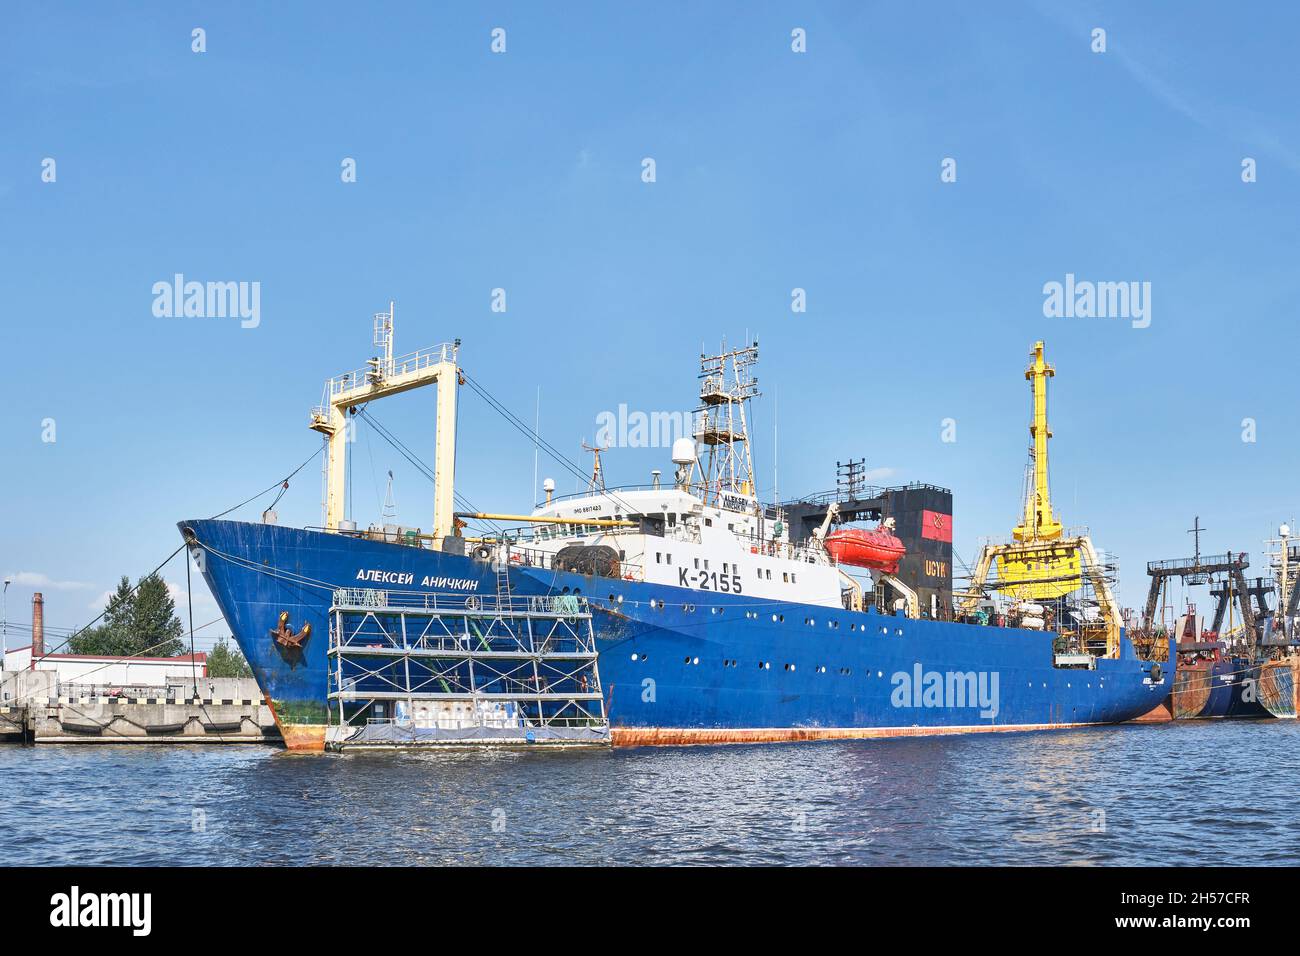 Navire de la fabrique de poissons, LE NAVIRE ALEKSEY ANICHKIN en réparation sur la rivière Pregolya, Kaliningrad, Russie Banque D'Images